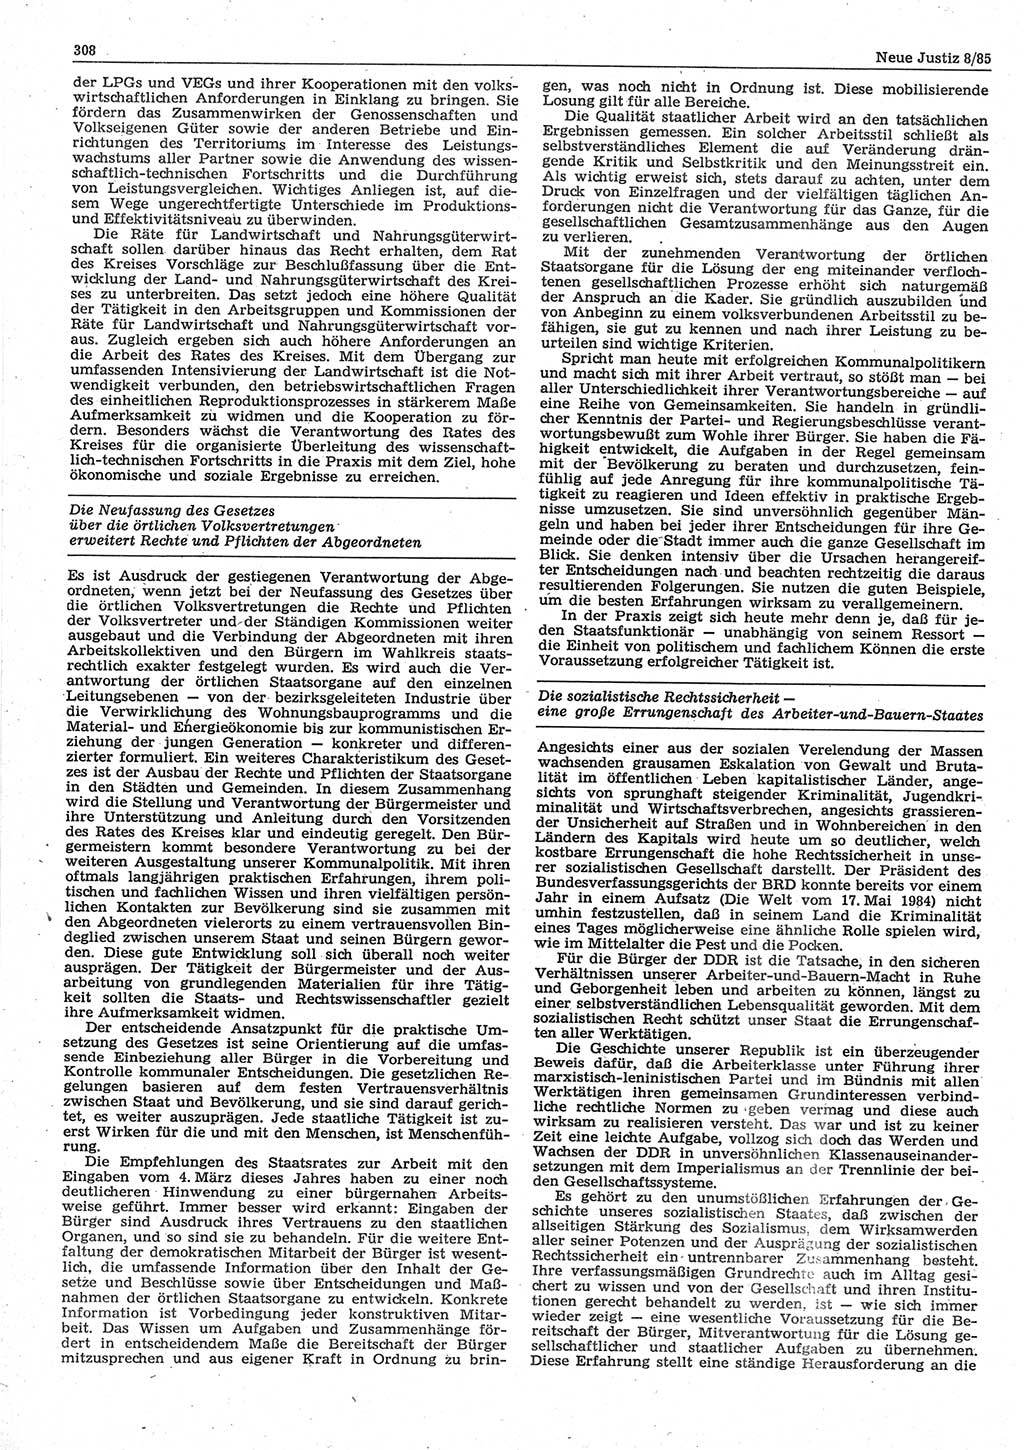 Neue Justiz (NJ), Zeitschrift für sozialistisches Recht und Gesetzlichkeit [Deutsche Demokratische Republik (DDR)], 39. Jahrgang 1985, Seite 308 (NJ DDR 1985, S. 308)